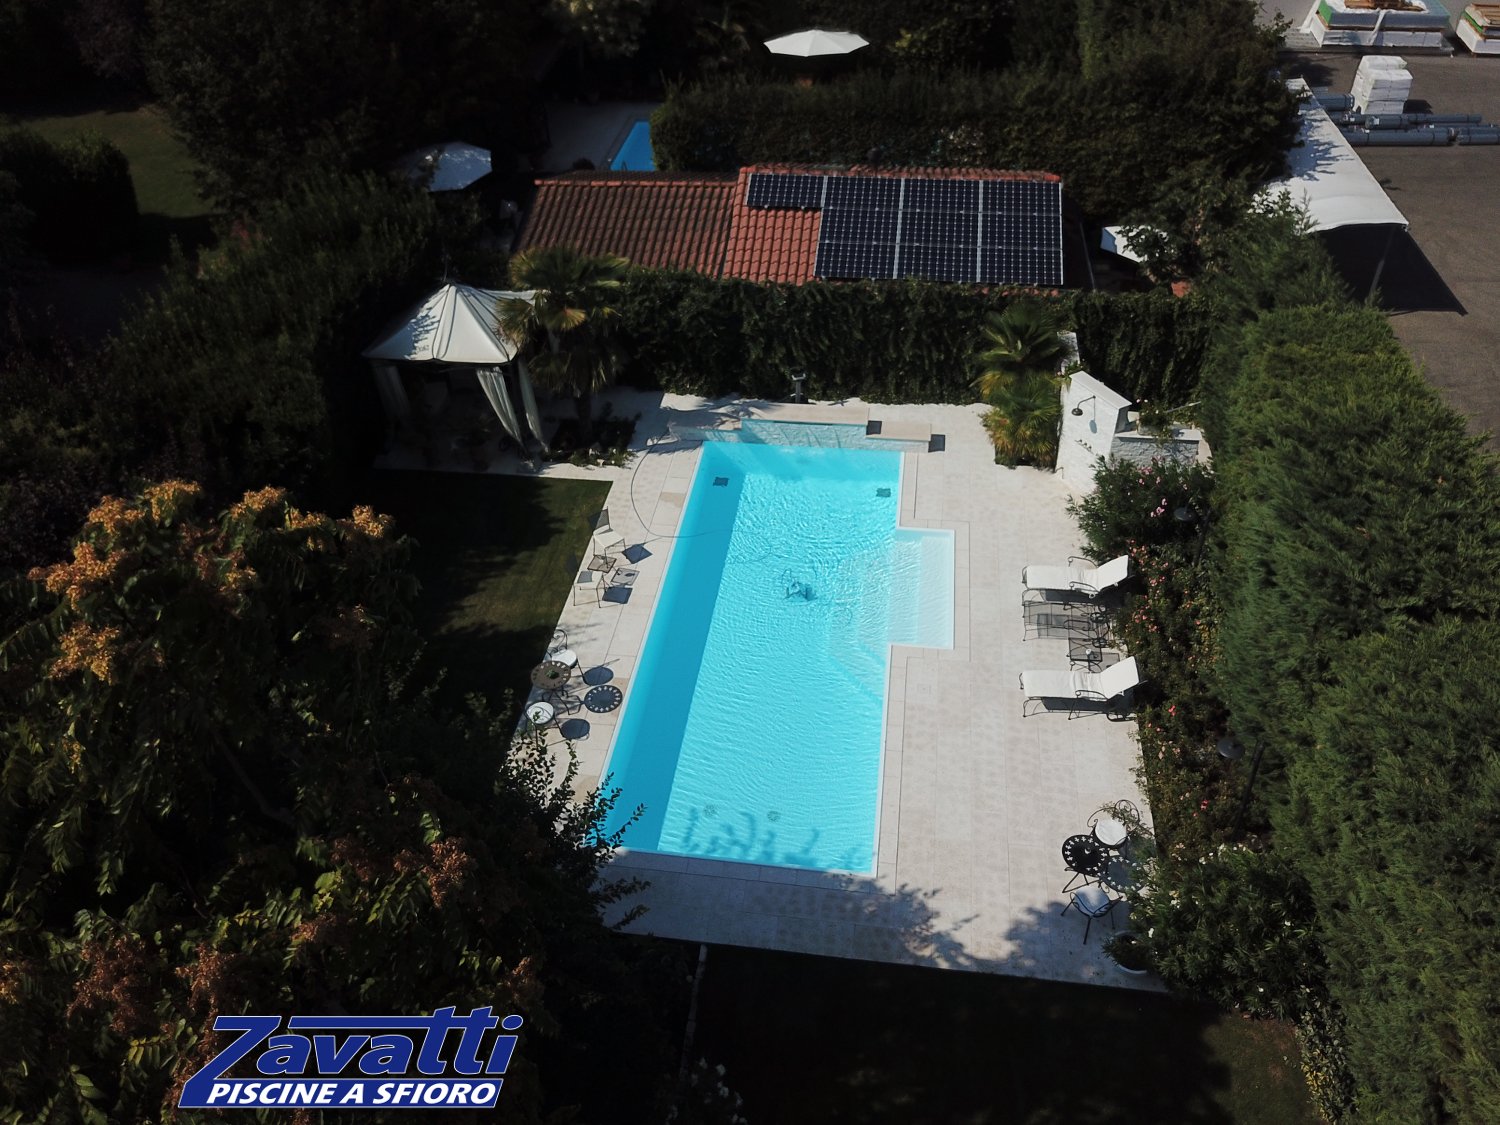 Vista aerea di una piscina a sfioro antisismica e ad altissimo risparmio energetico. Rivestimento bianco e scalinata centrale a gradoni trapezioidali